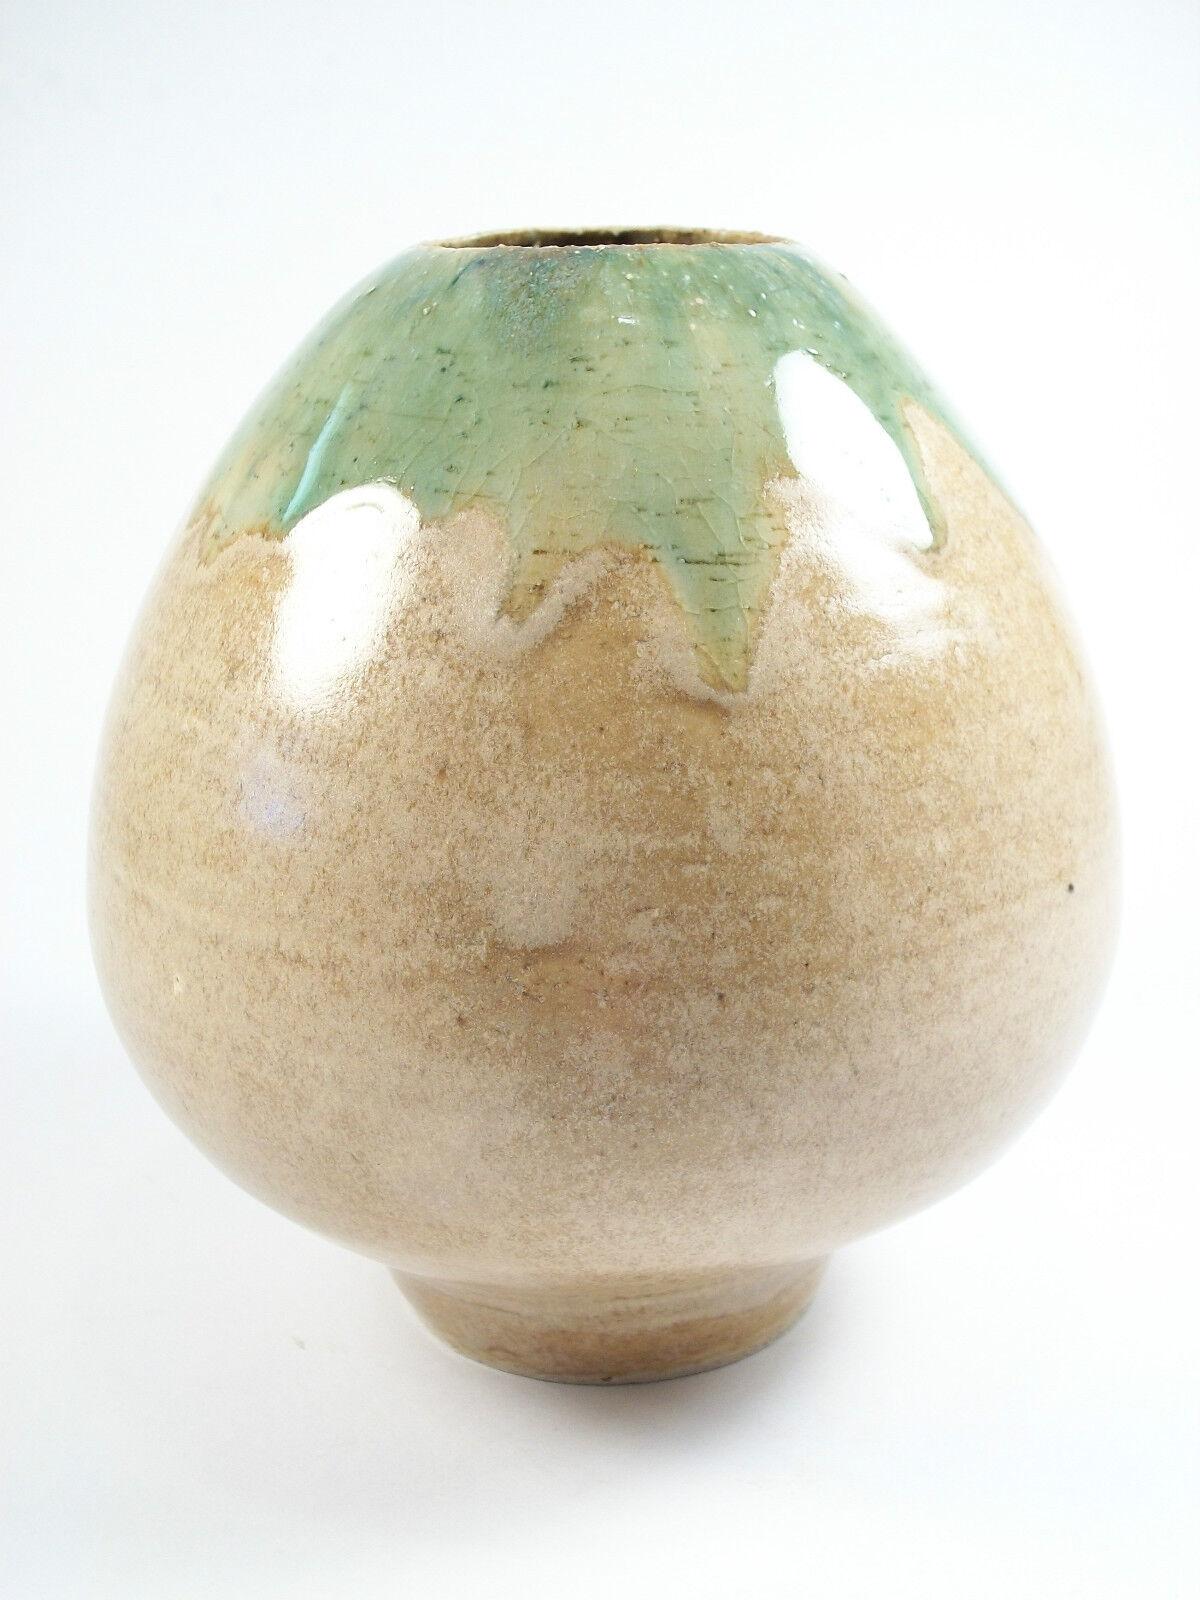 Canadian Vintage Porcelaneous Studio Pottery Vase - Modern Design - Signed - circa 1980s For Sale